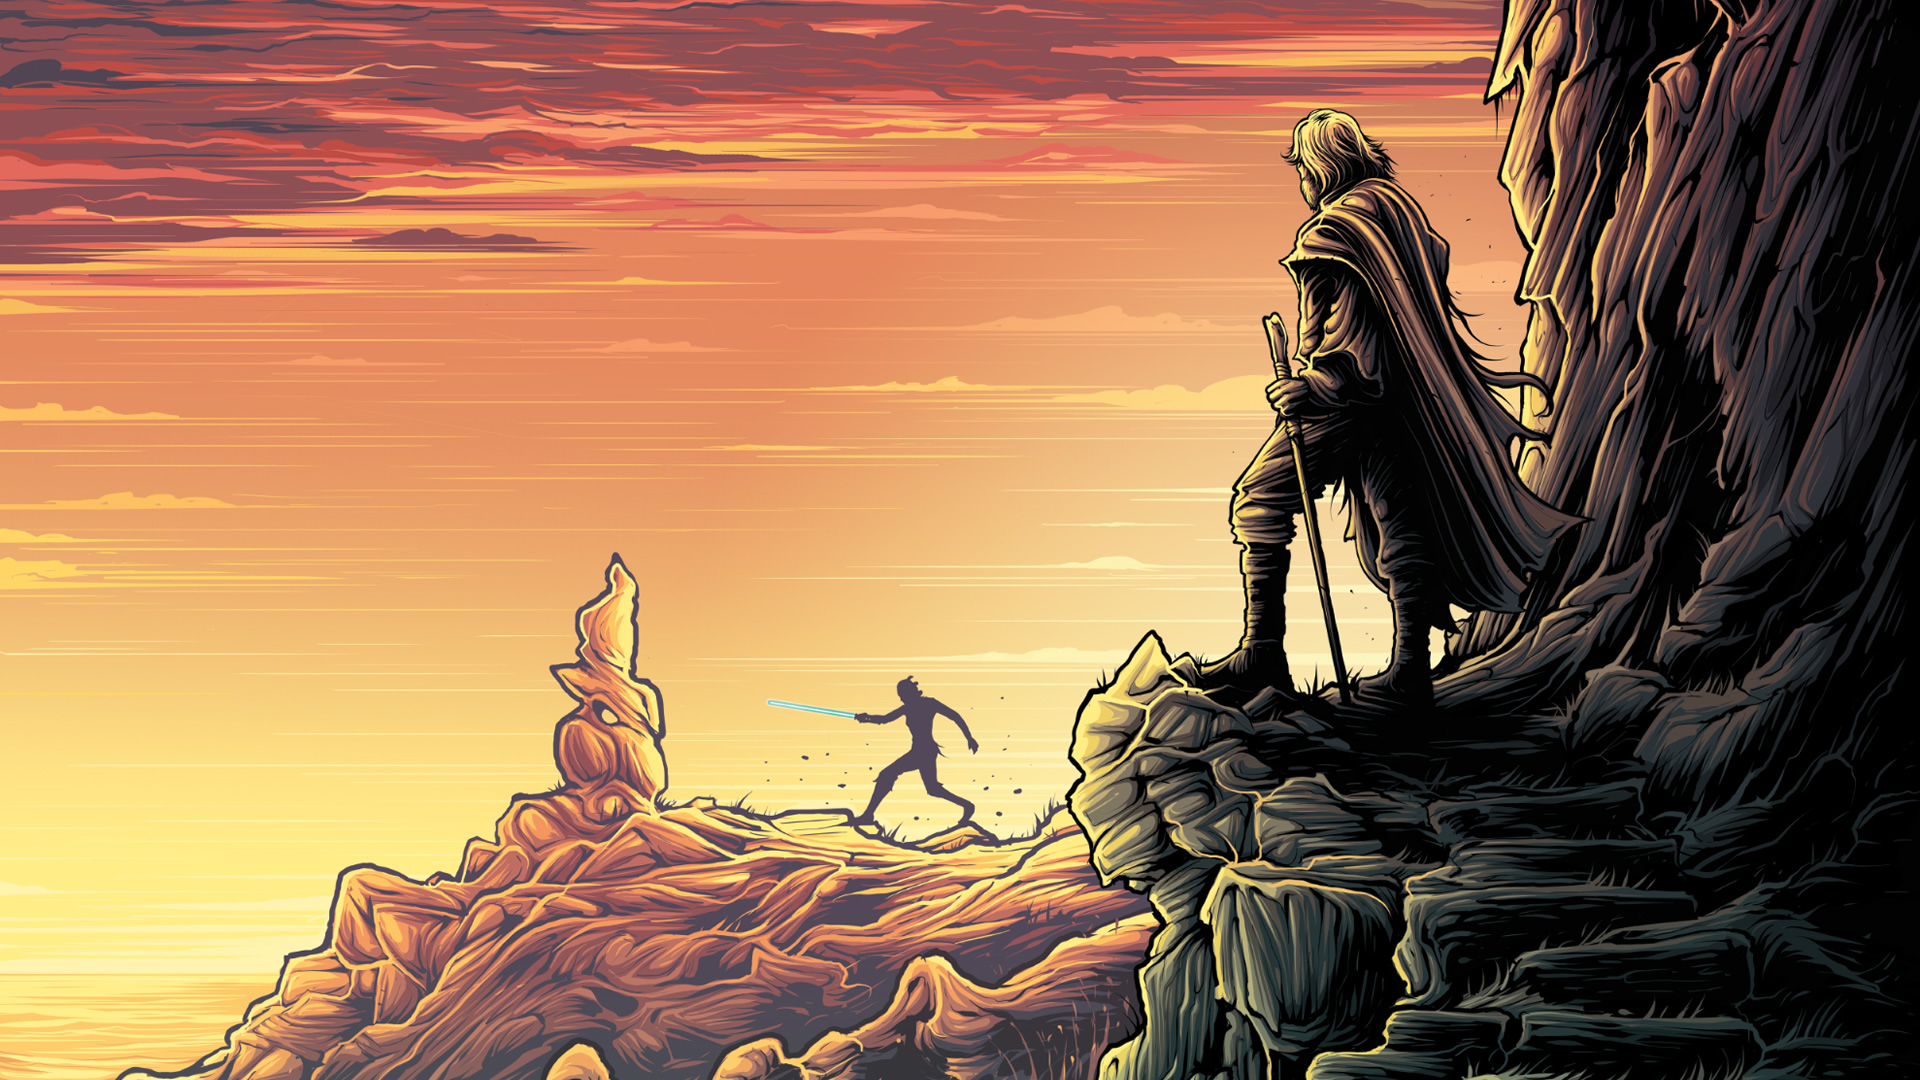 The Last Jedi Wallpaper - Background The Last Jedi , HD Wallpaper & Backgrounds